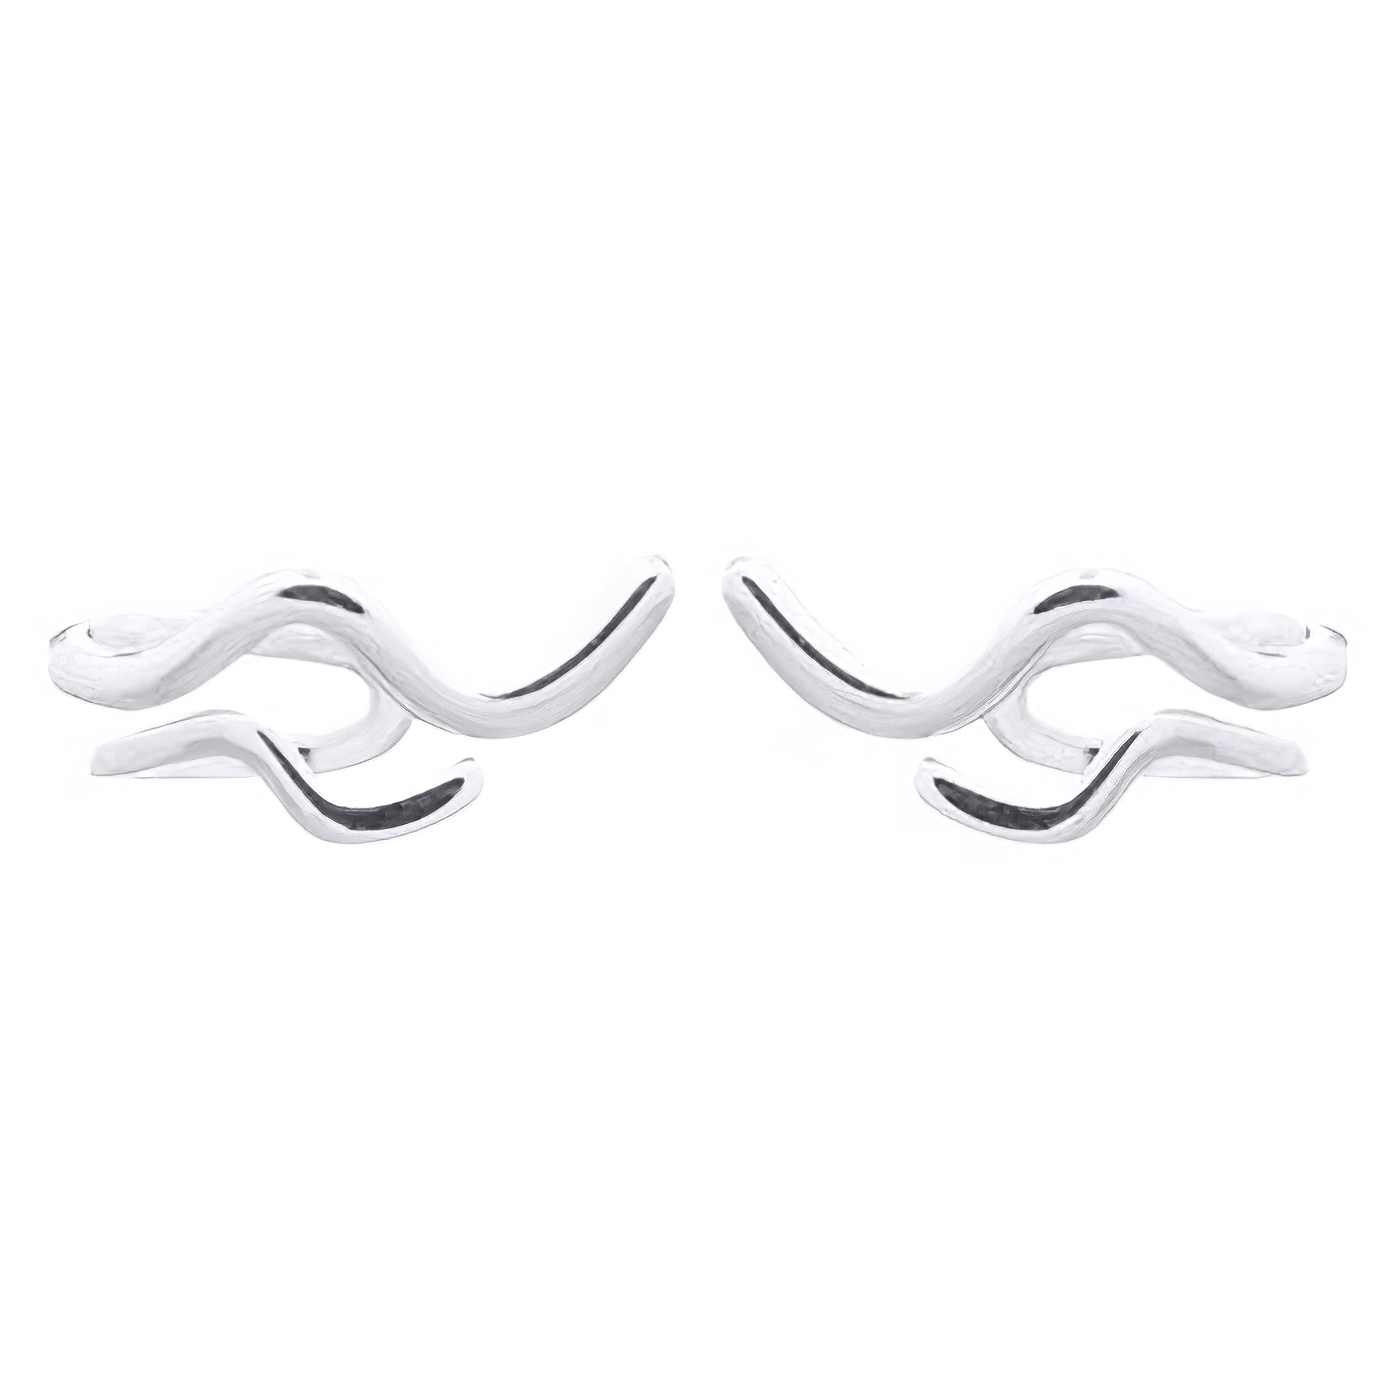 Waves Side Ear Stud 925 Silver Earrings by BeYindi 